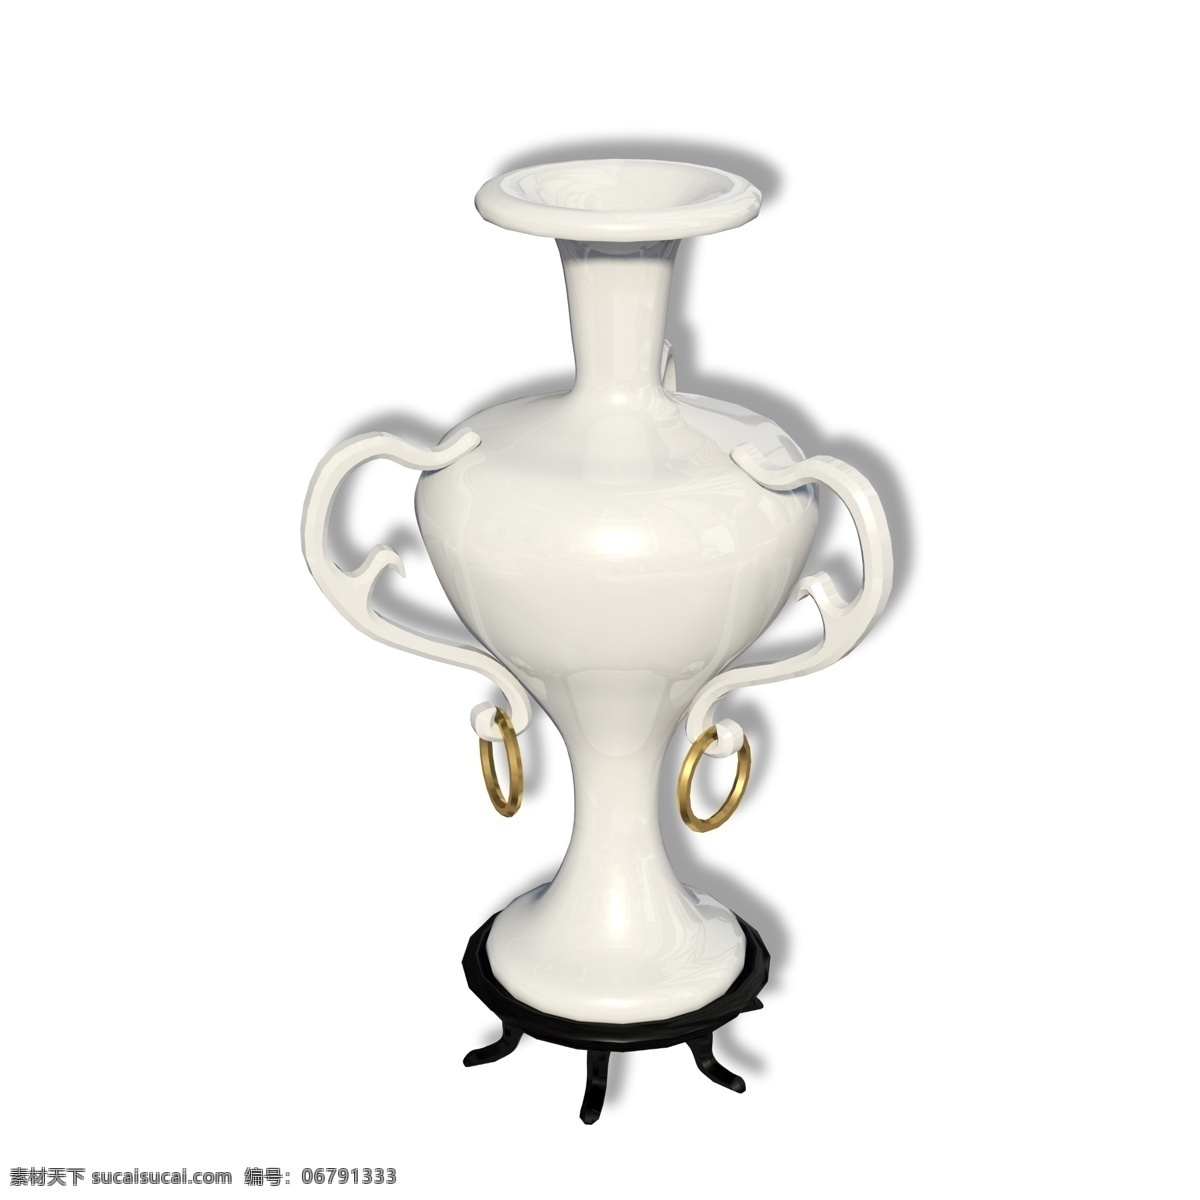 古典 陶瓷 白色 花瓶 瓷器 装饰品